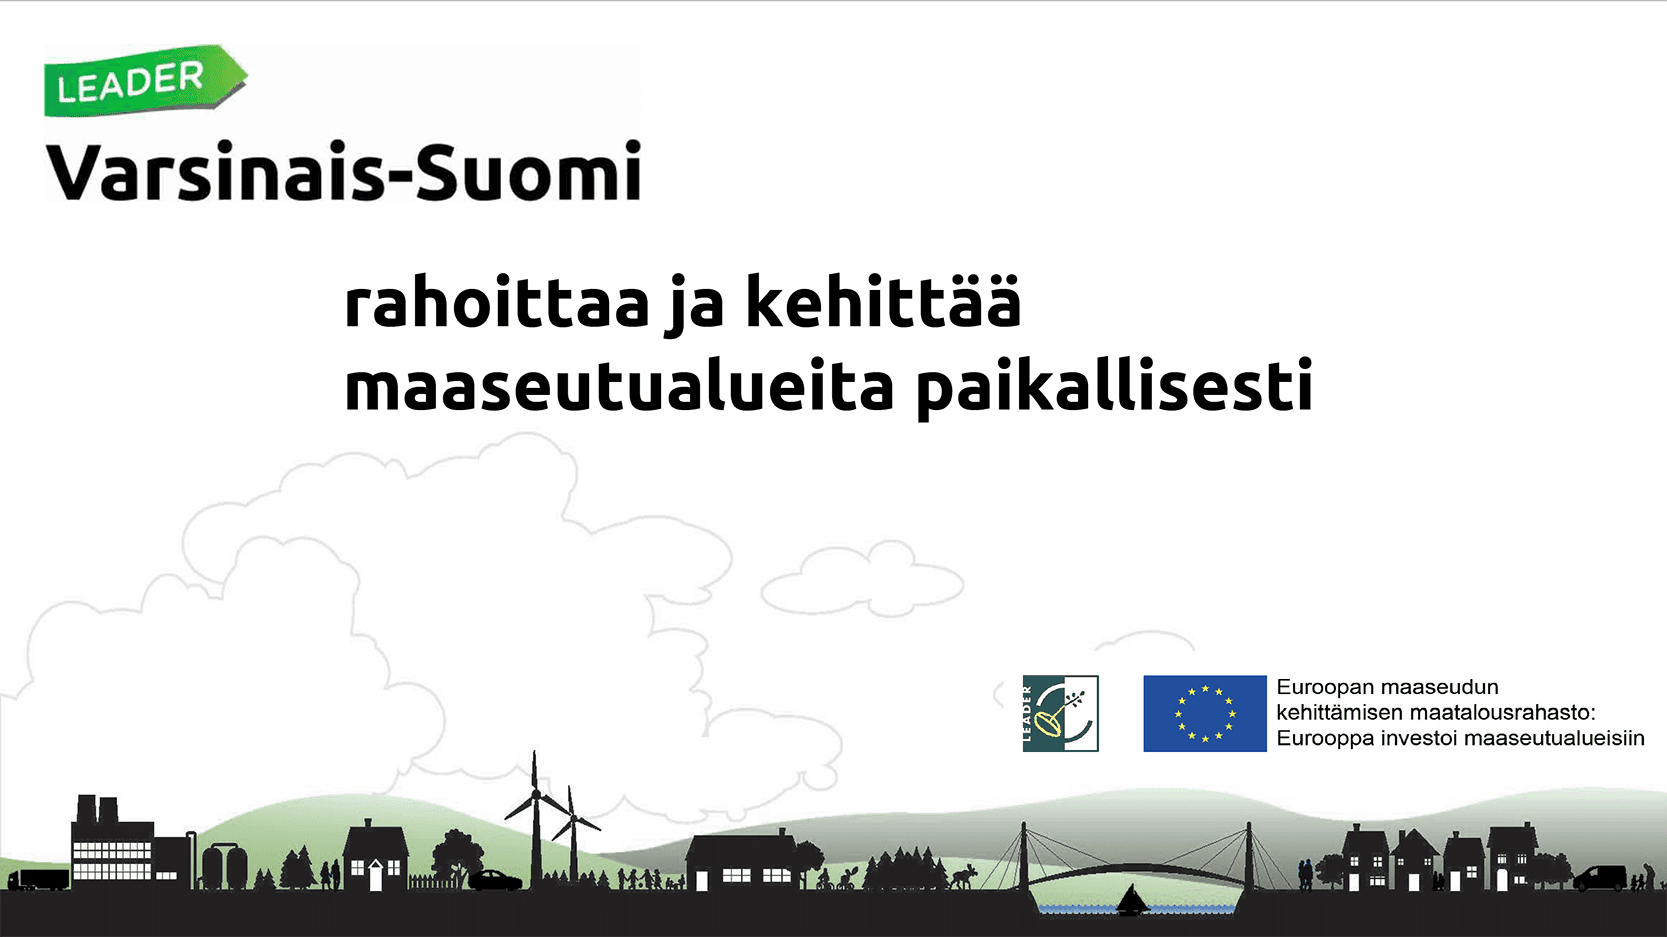 Valkoisella pohjalla teksti: Leader Varsinais-Suomi rahoittaa ja kehittää maaseutua paikallisesti.